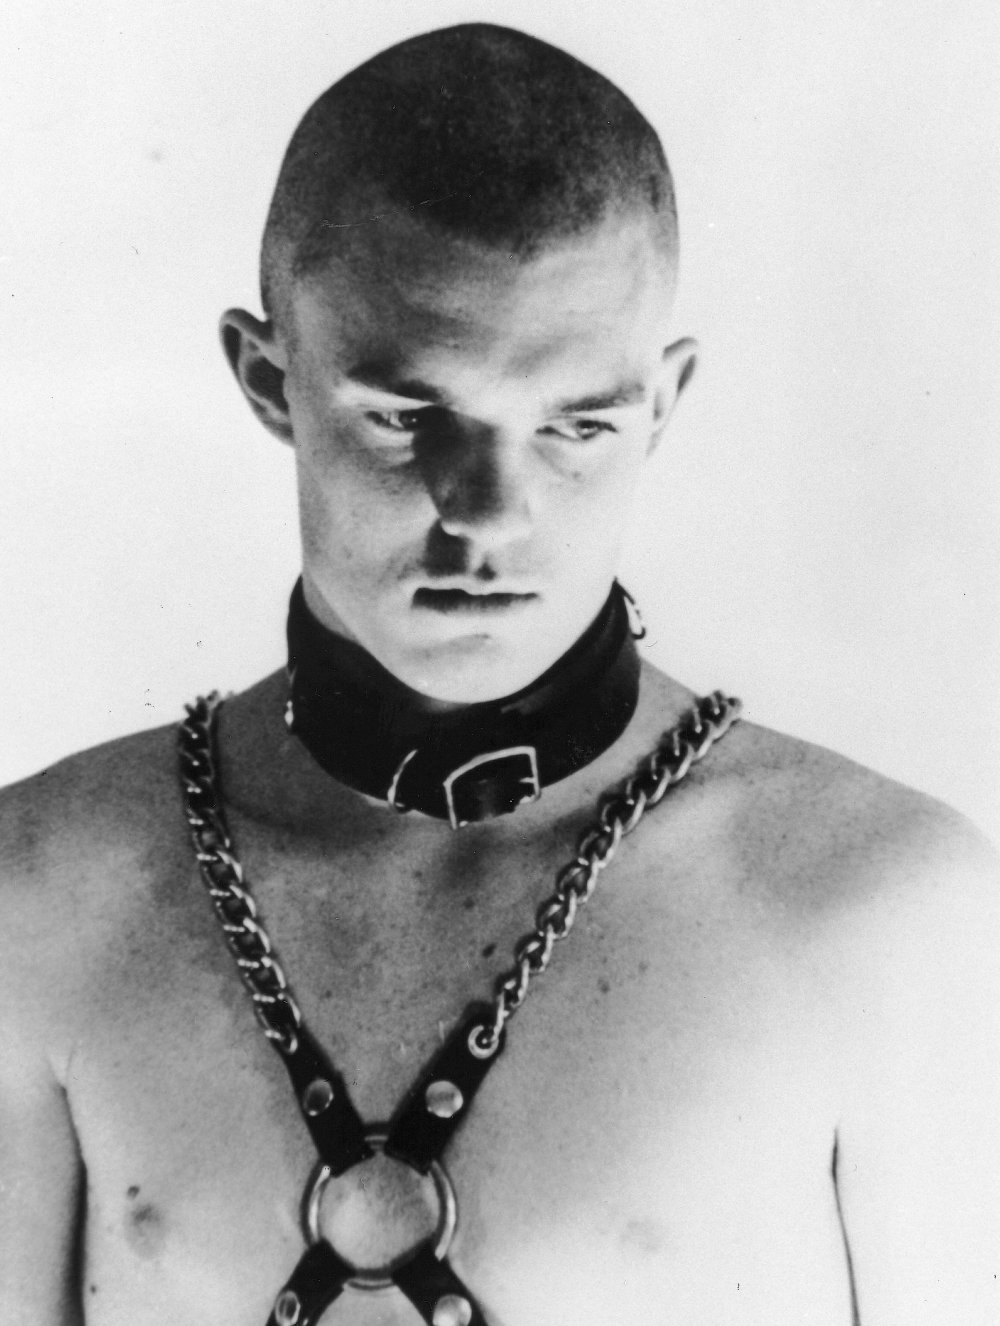 no-skin-off-my-ass-1991-001-klaus-von-brucker-skinhead-leather-collar-chains-on-bare-chest